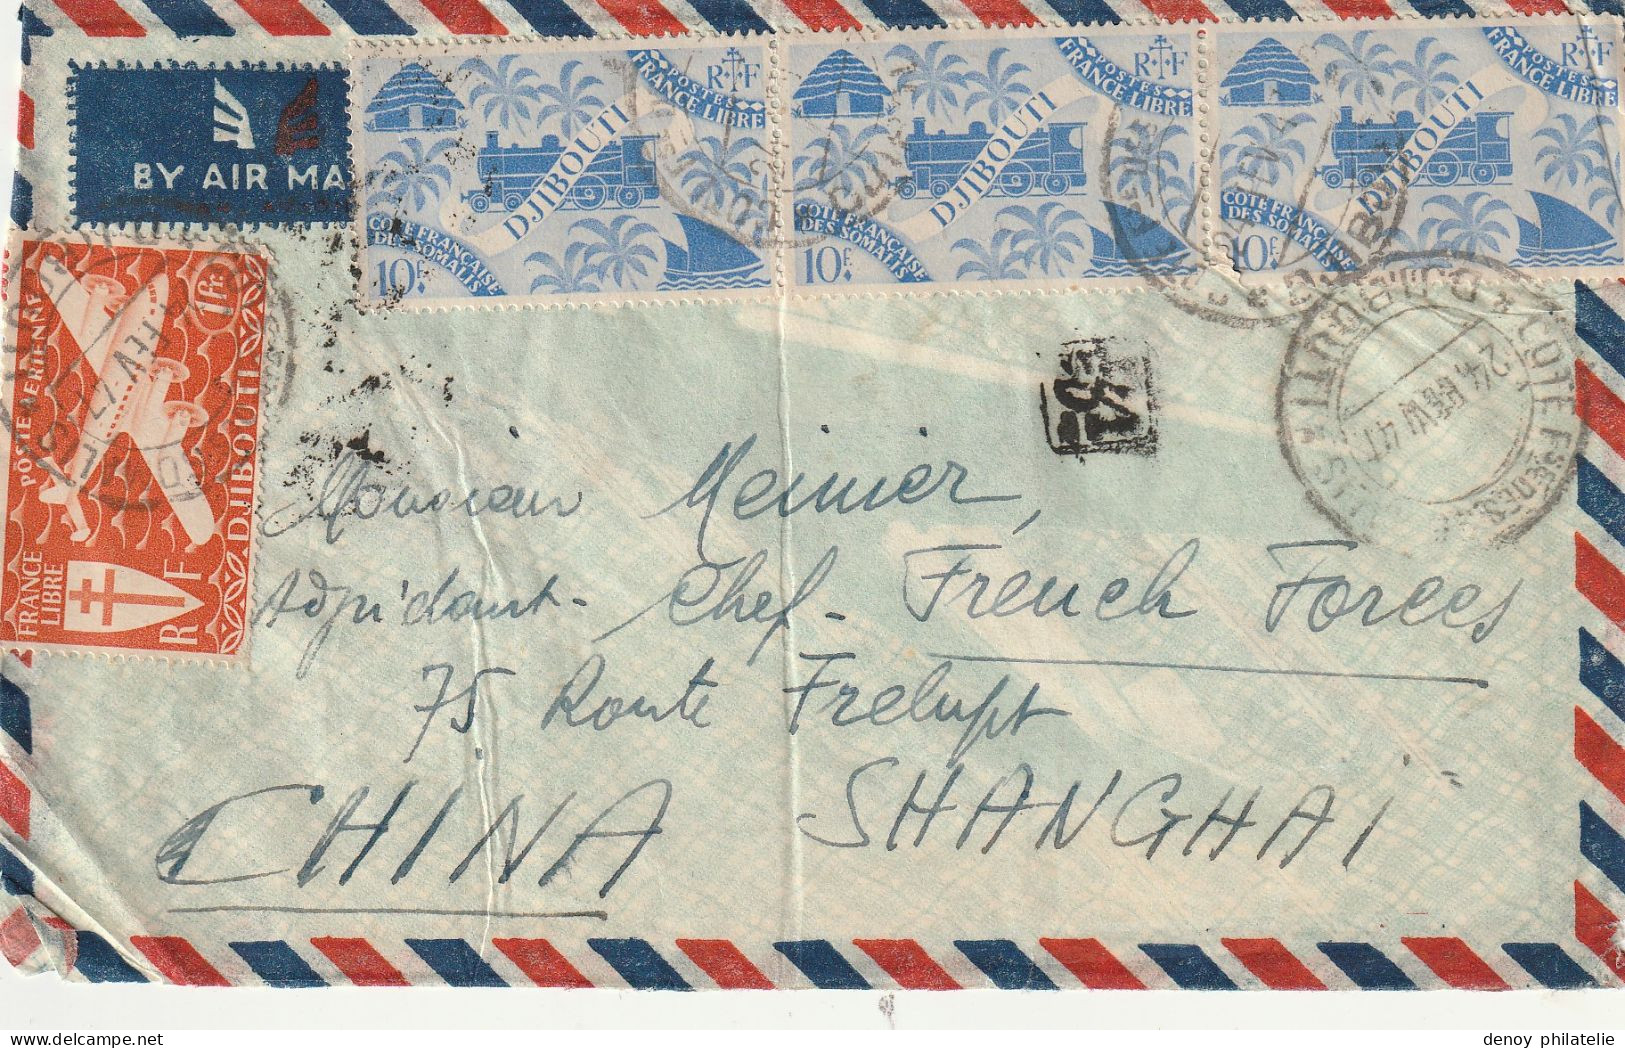 Lettre De Cote Des Somalis A Destination De Schanghai (chine )1947 - Storia Postale